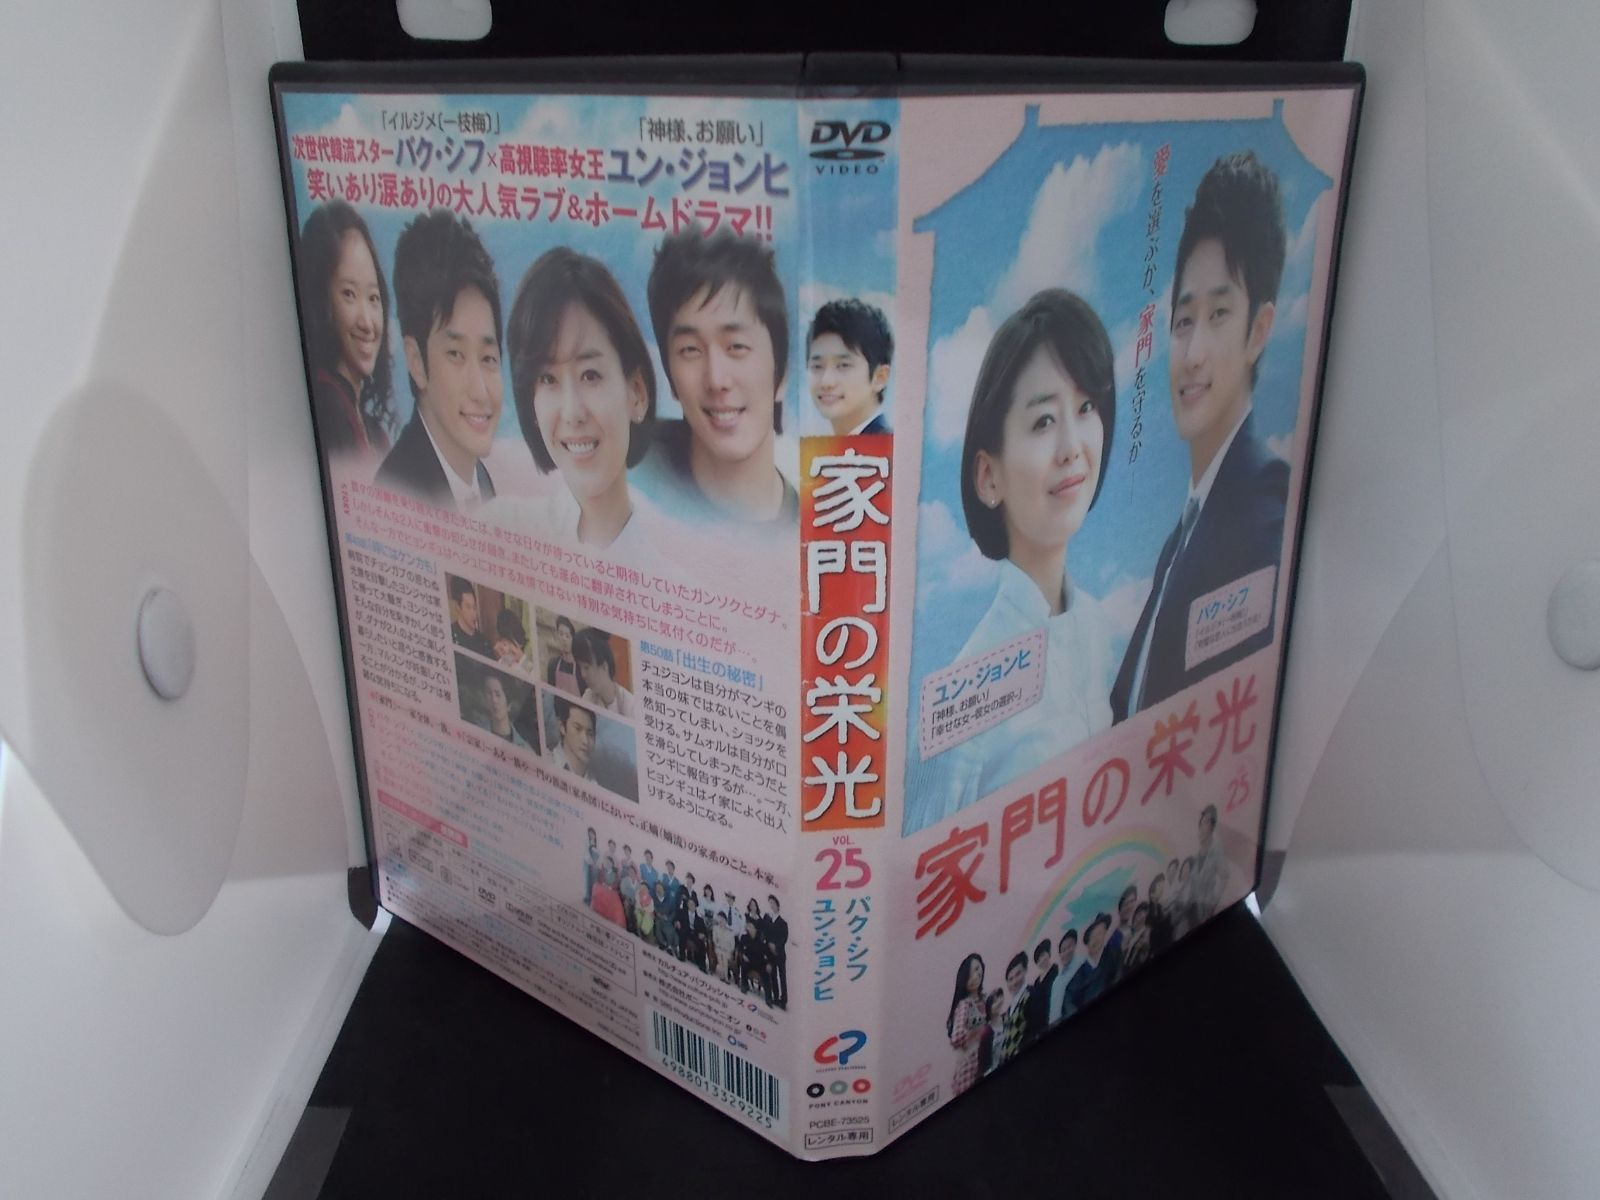 家門の栄光 VOL.25 レンタル専用 中古 DVD ケース付き - メルカリ